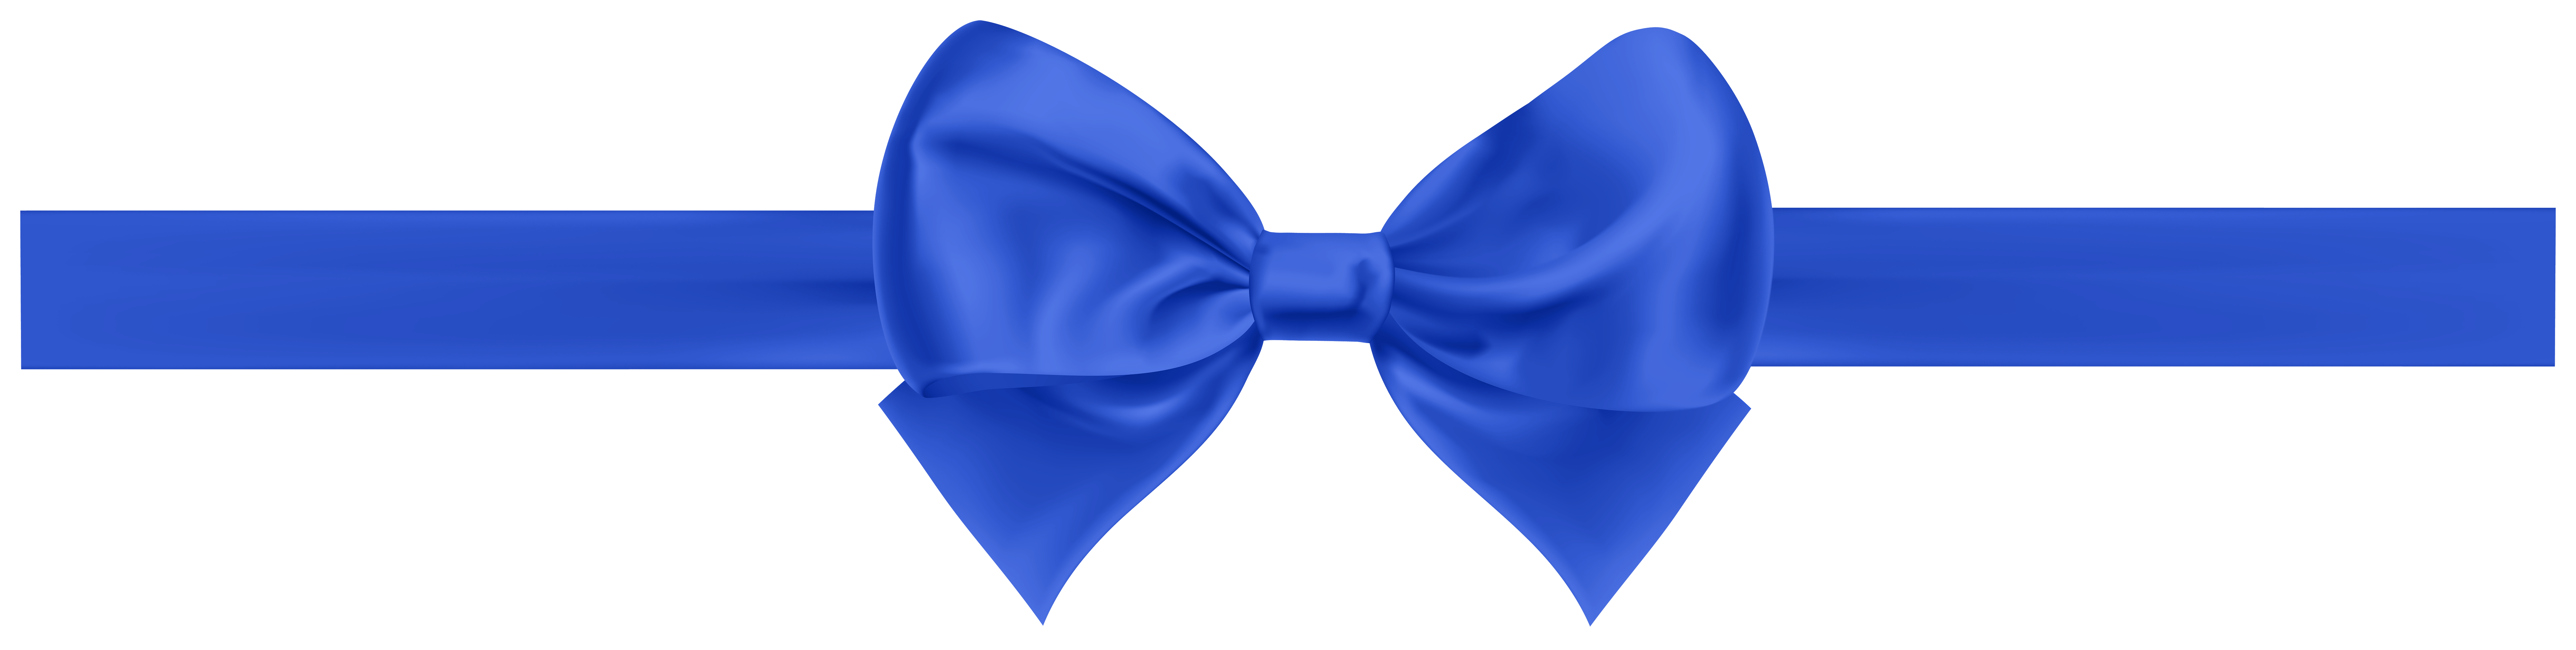 Blue Ribbon PNG - Blue Ribbon Banner, Blue Ribbon Bow, Blue Ribbon